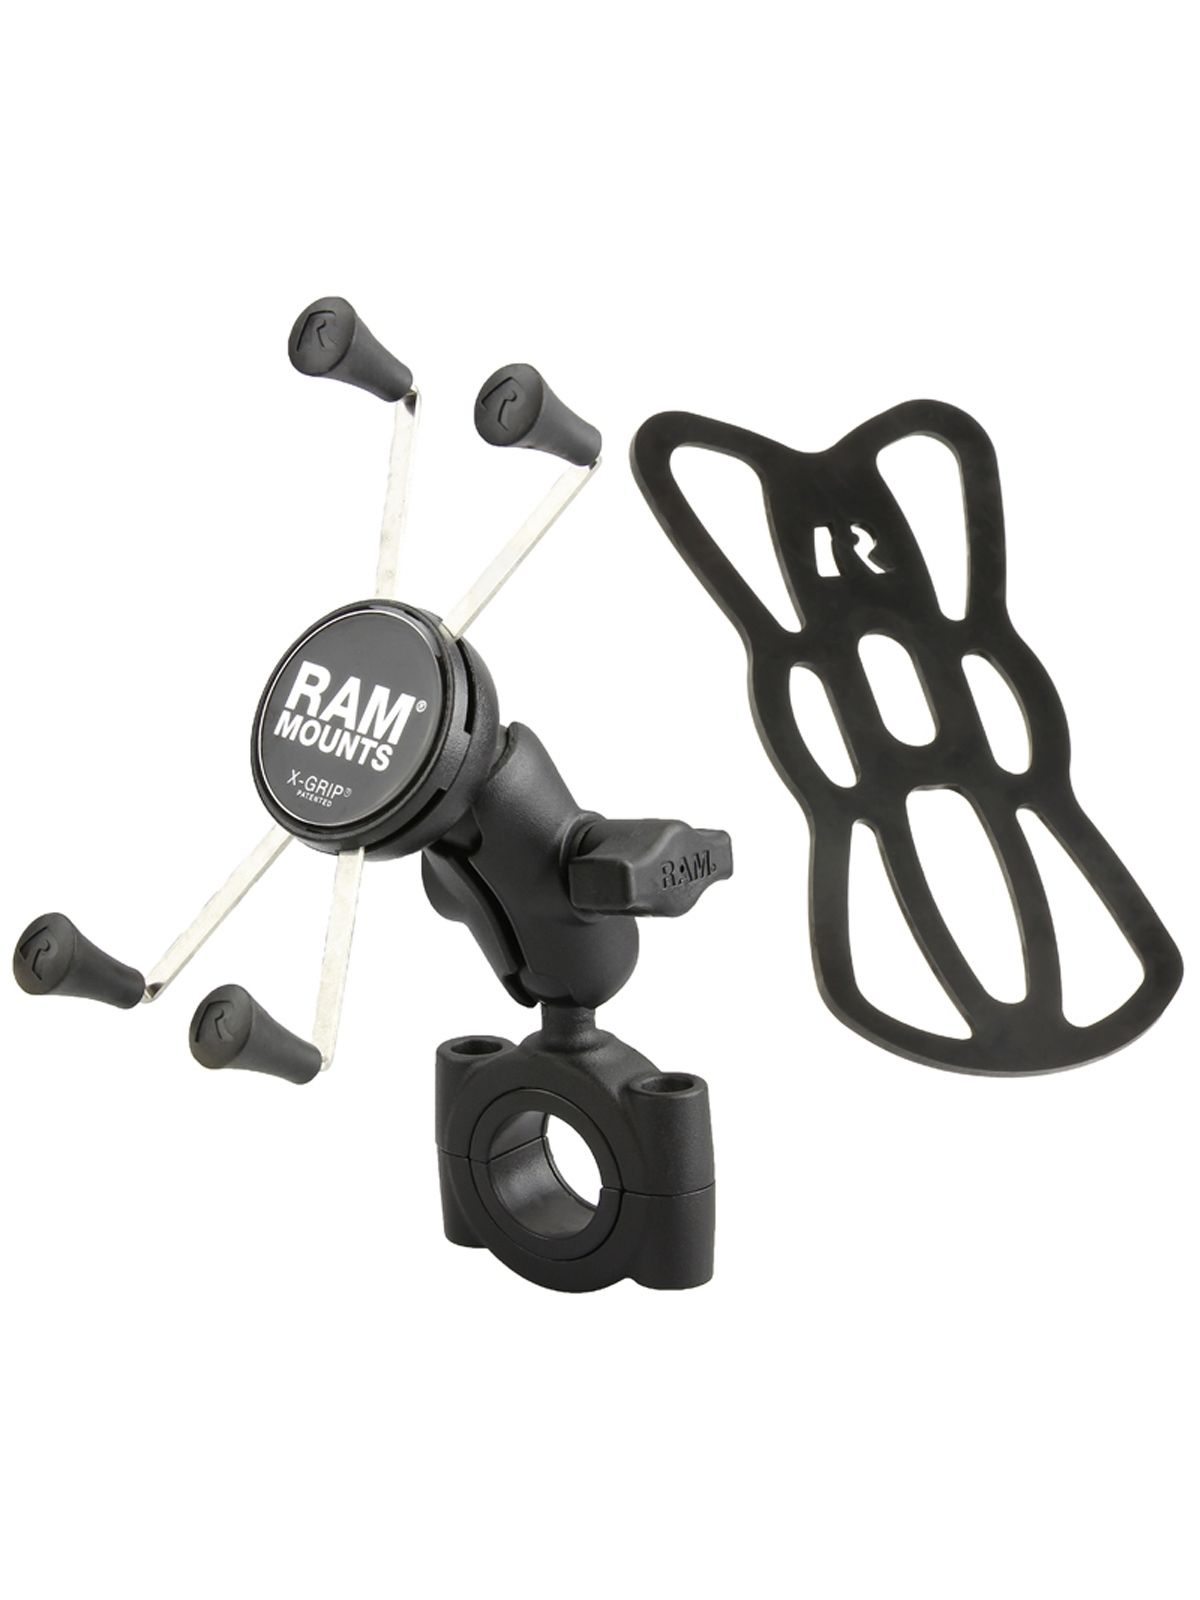 RAM Mounts X-Grip Motorrad-Halterung für Smartphones bis 114,3 mm Breite - B-Kugel (1 Zoll), Torque-Schraubklemme (Durchmesser 28,6-38,1 mm), kurzer Verbindungsarm